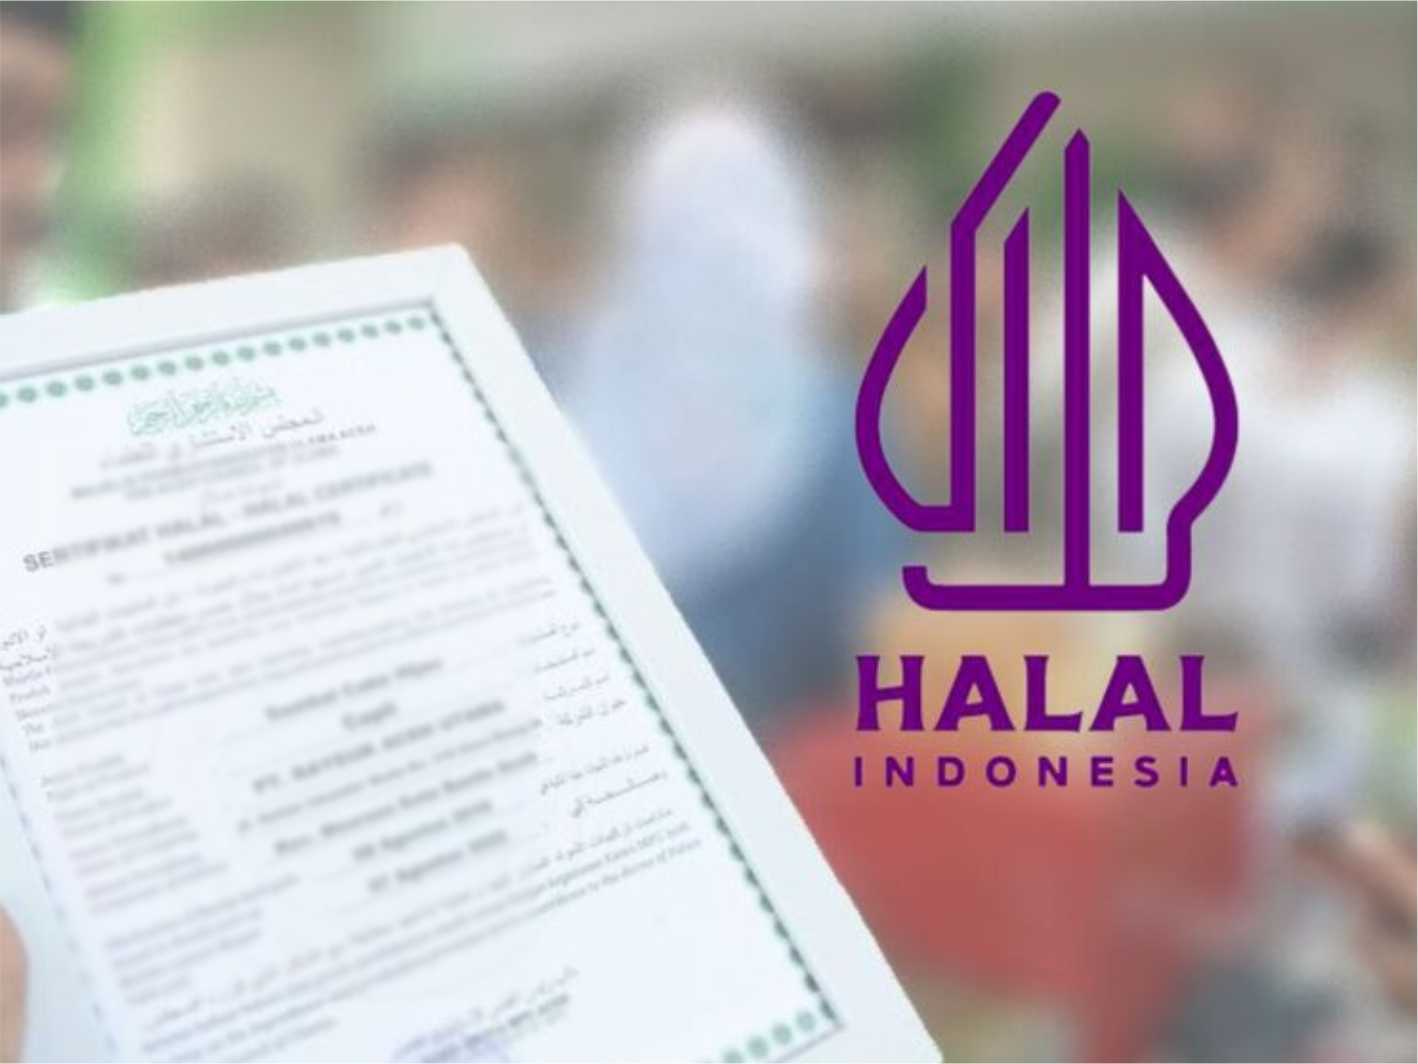 Disperindag Garut Adakan Program Sertifikasi Halal Gratis